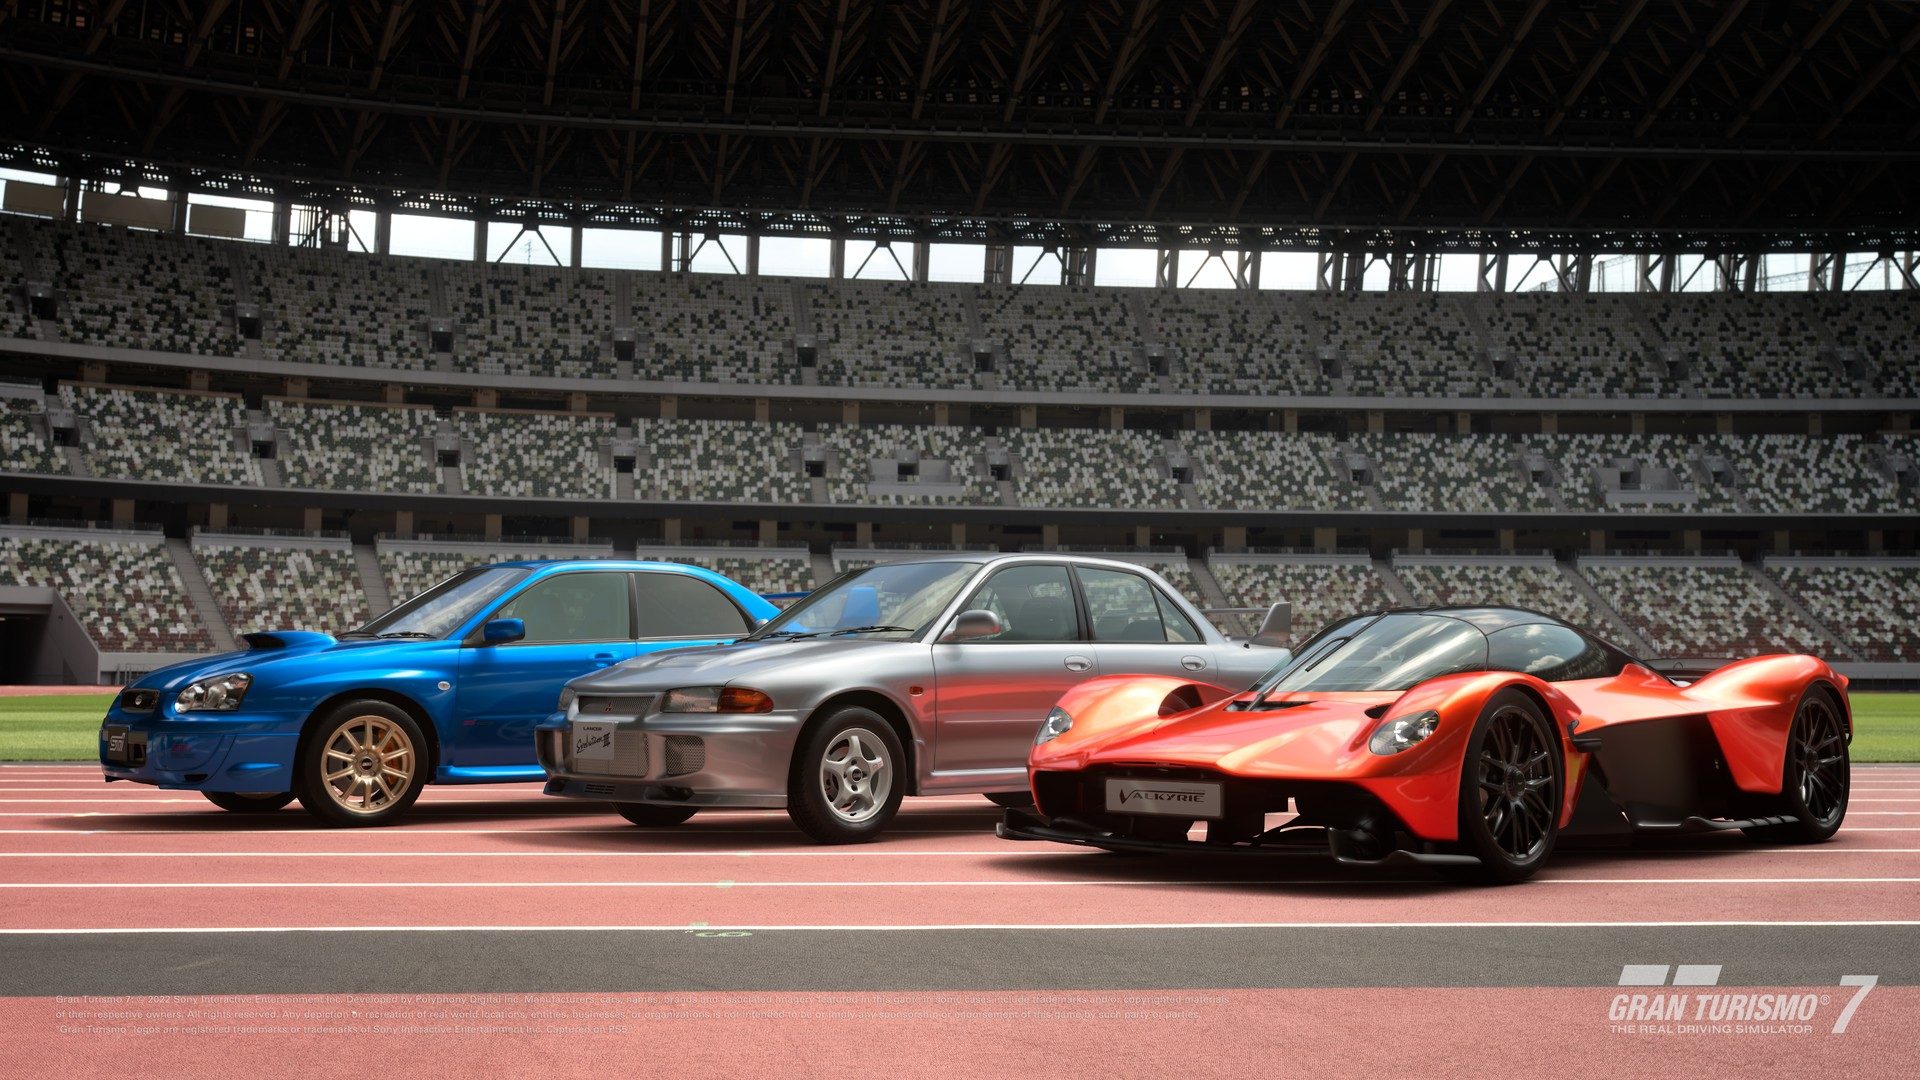 Gran Turismo 7 recebe atualização com três carros novos - Record